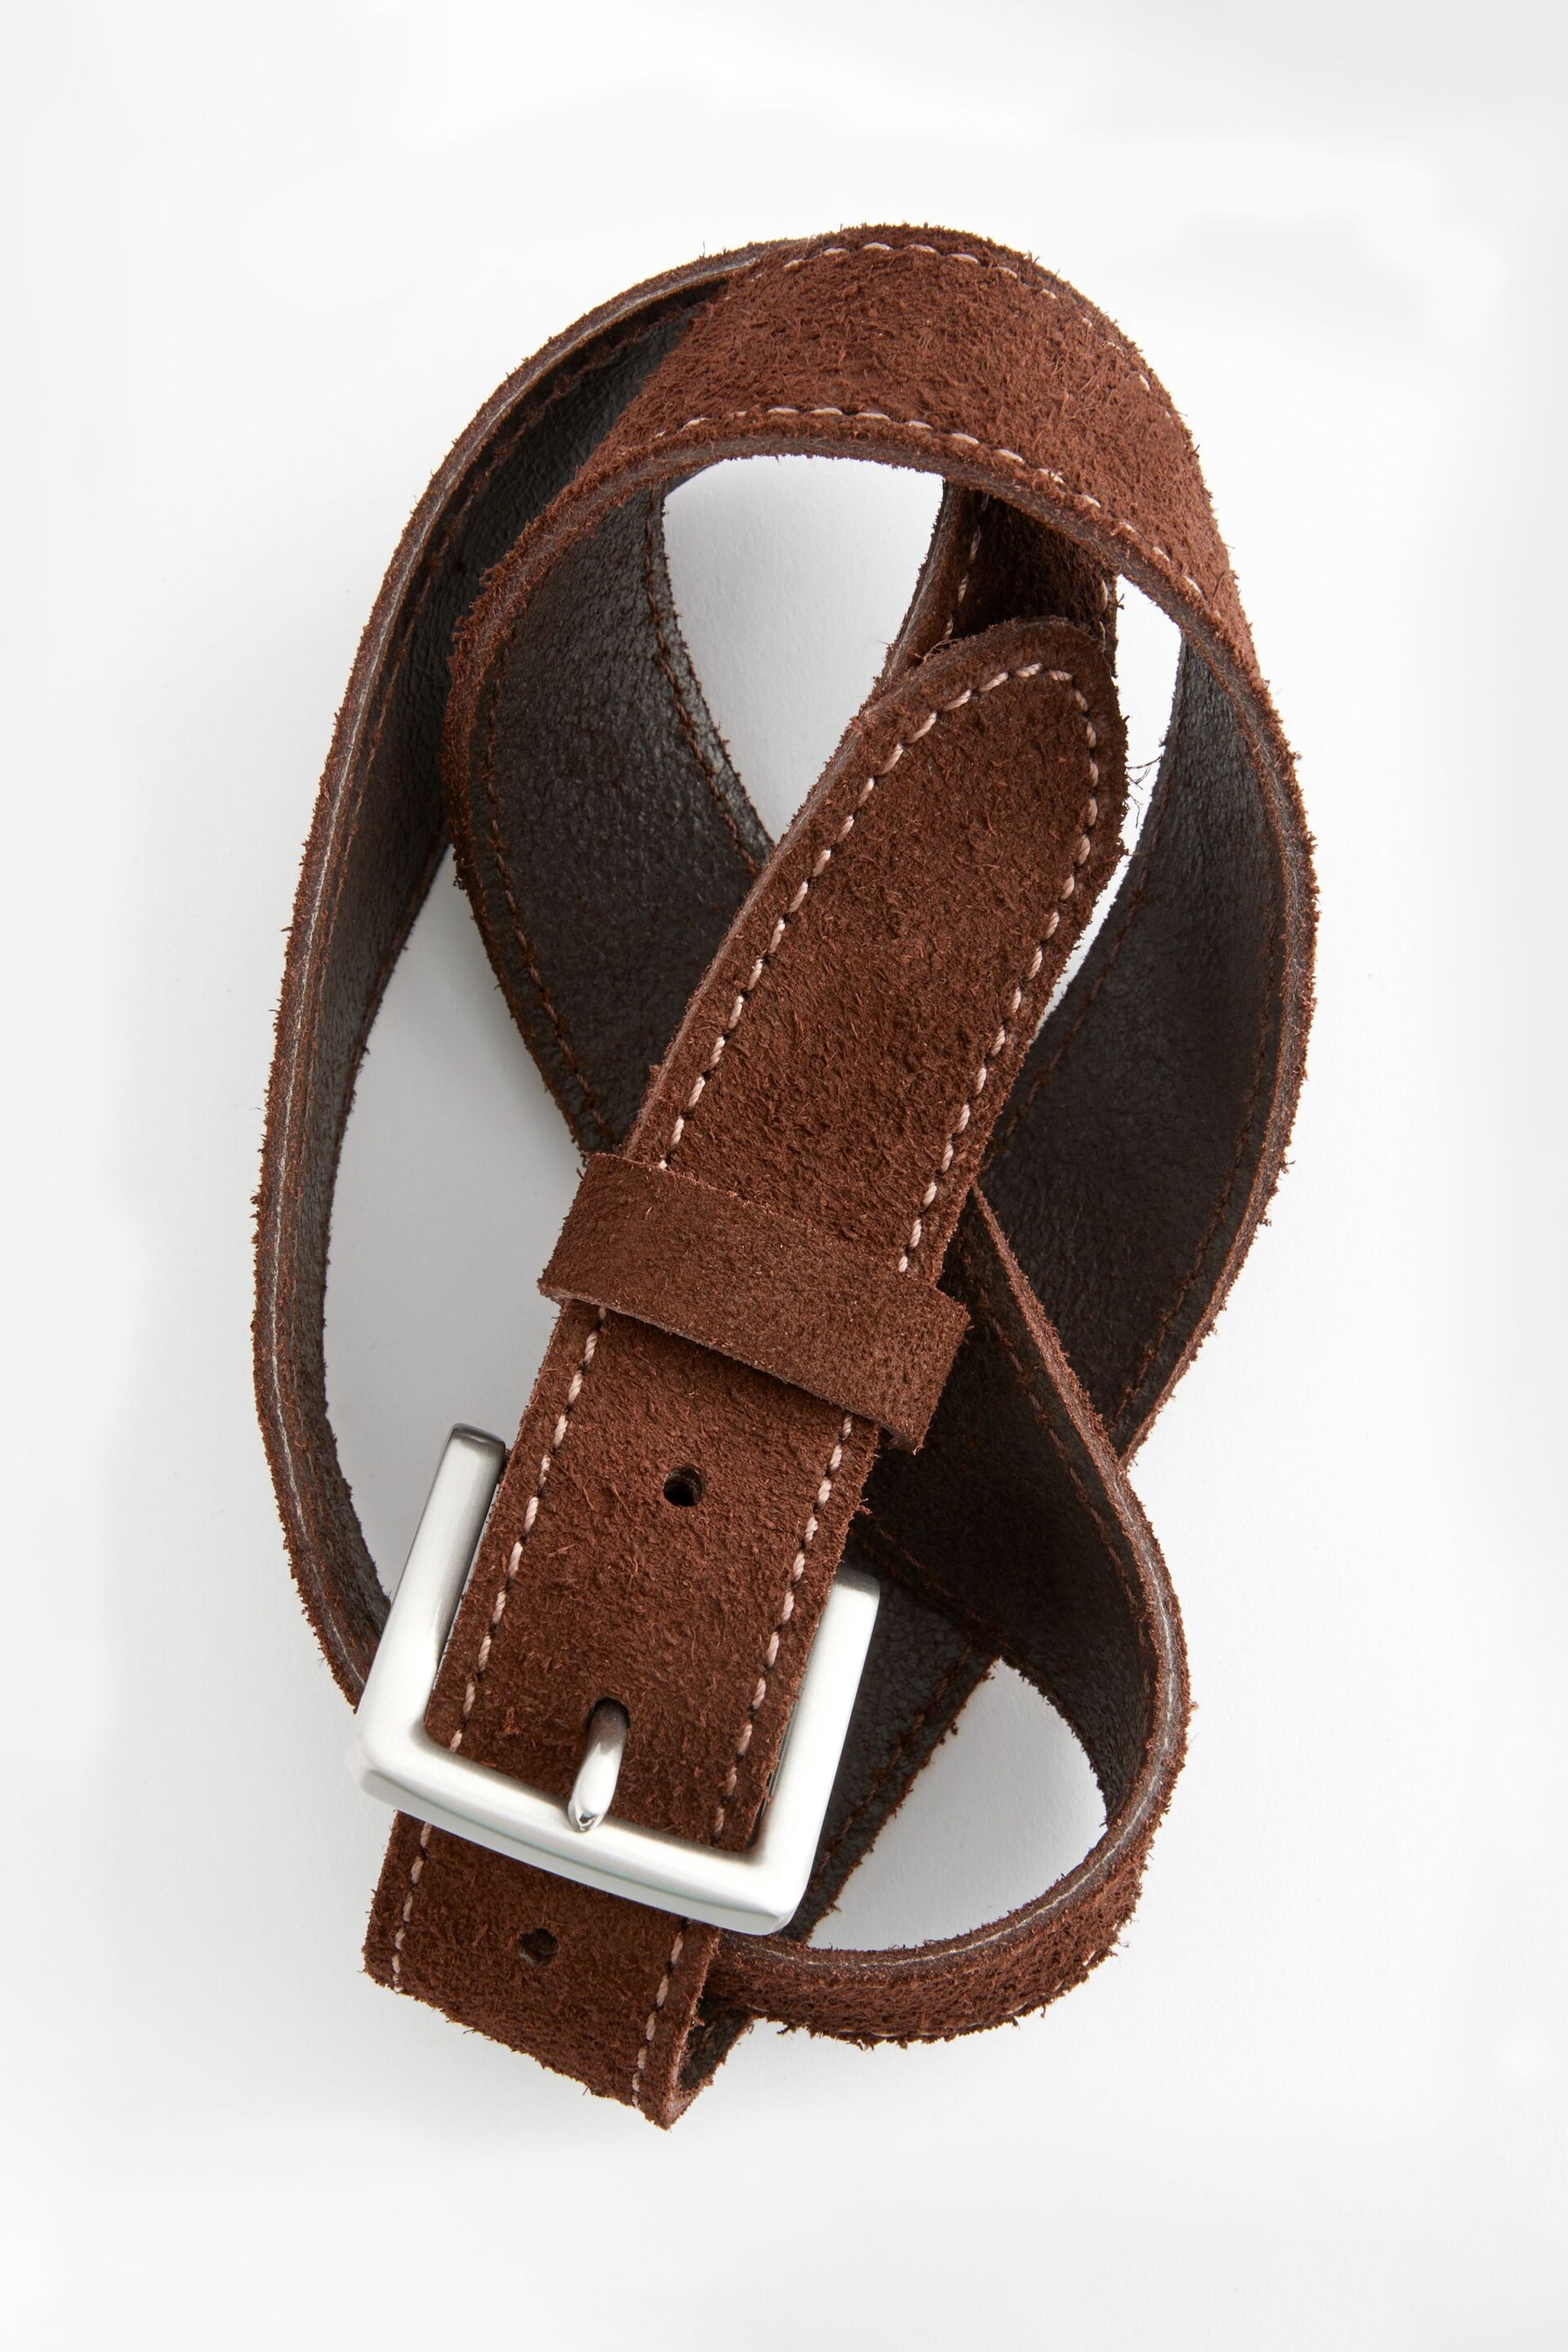 Brown Suede Stitch Belt - Image 3 of 3